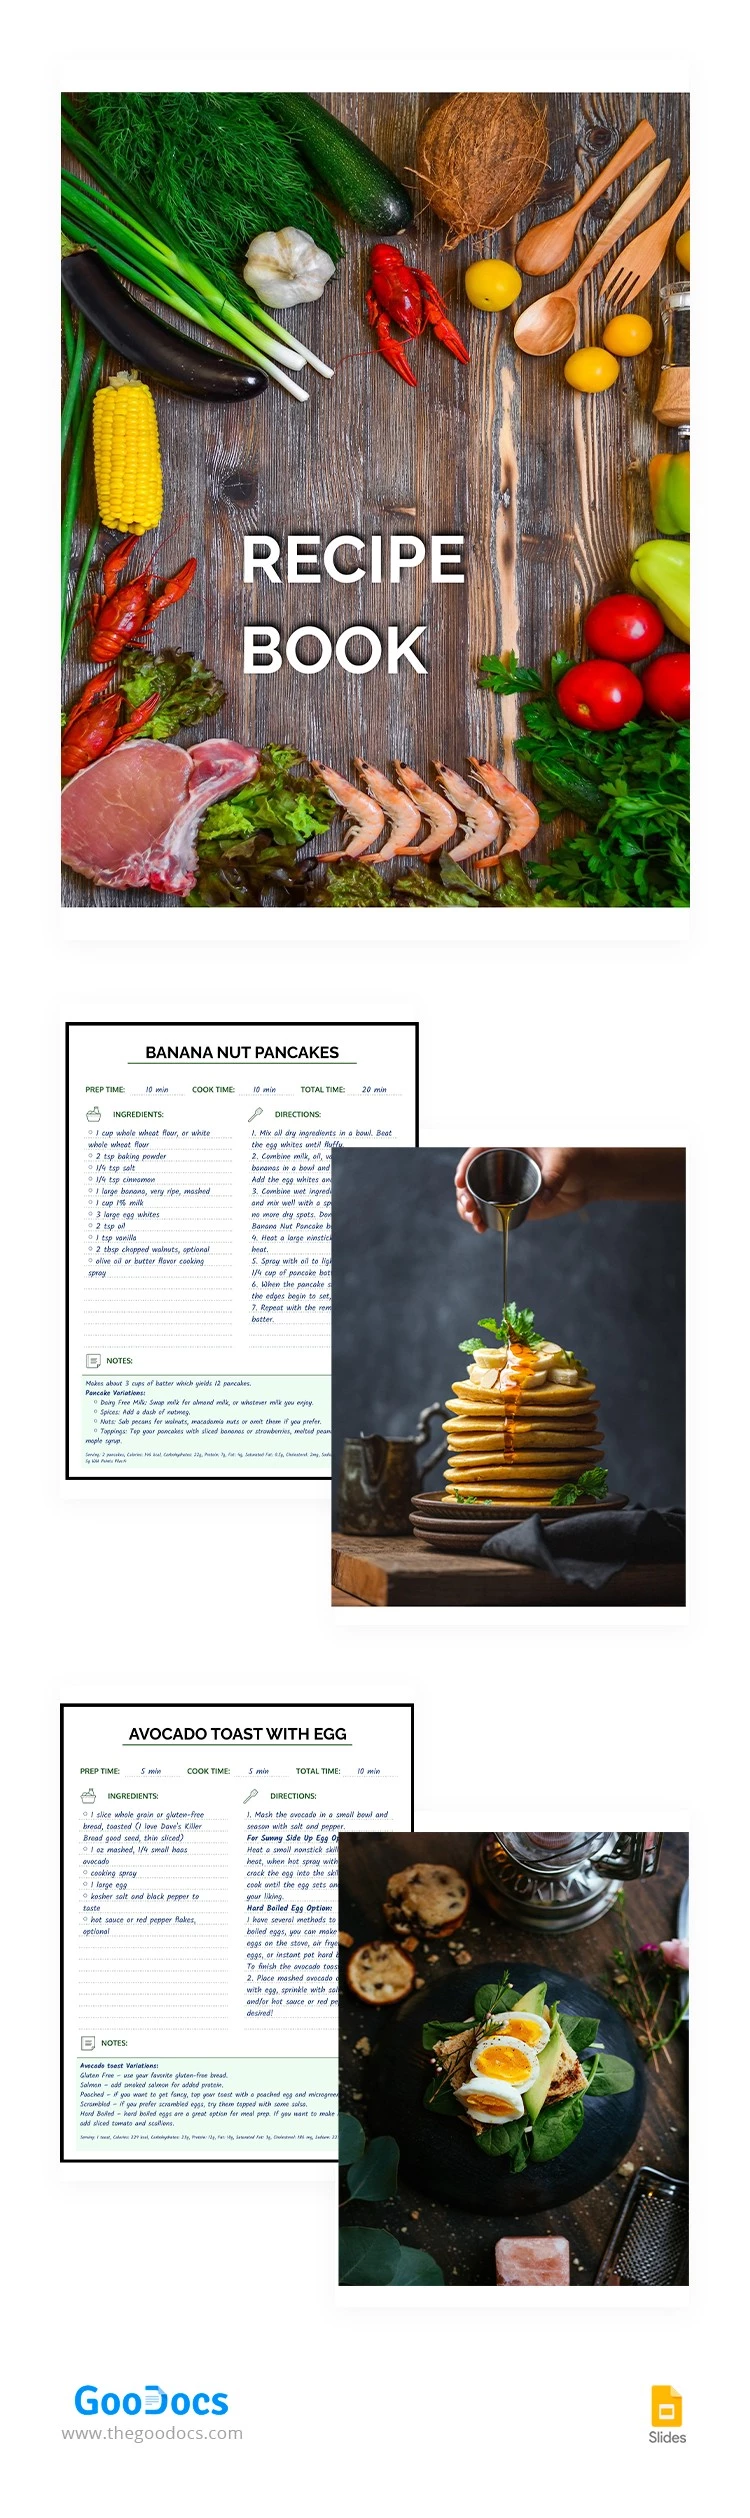 Libro de recetas colorido - free Google Docs Template - 10064995